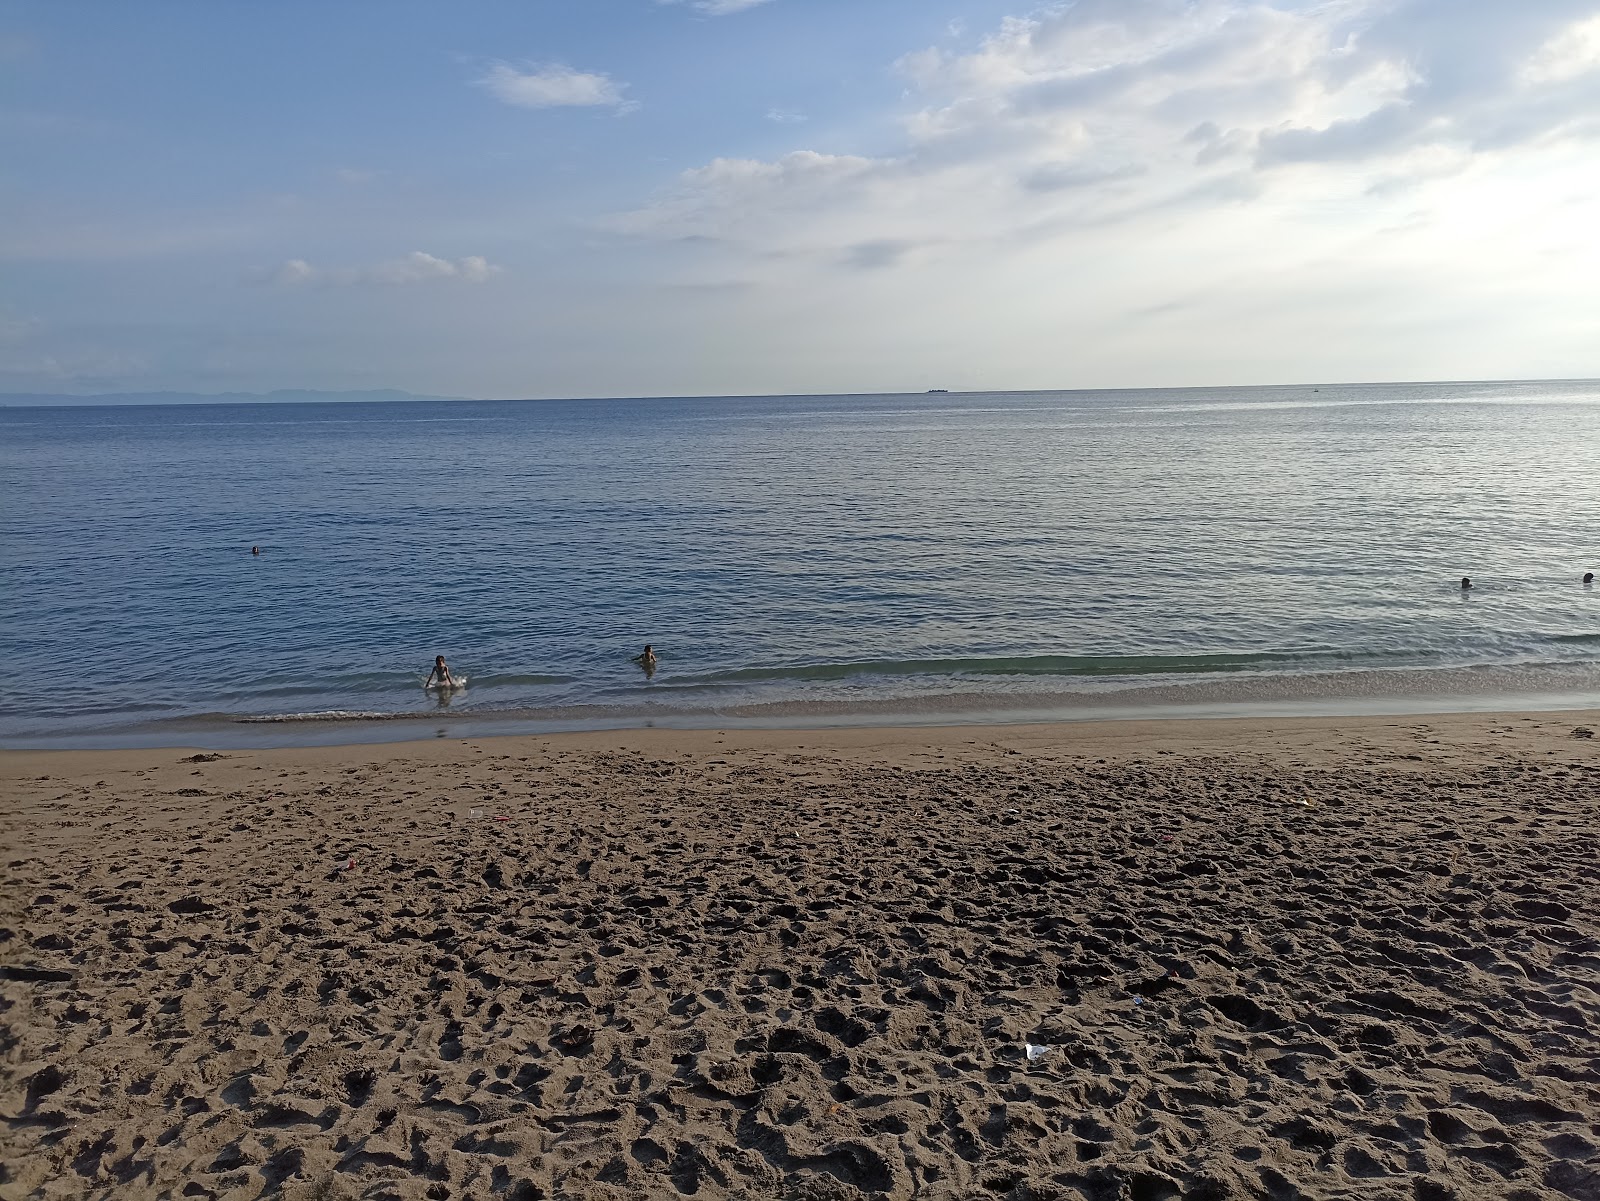 Foto di Duduk Senggigi Beach con molto pulito livello di pulizia